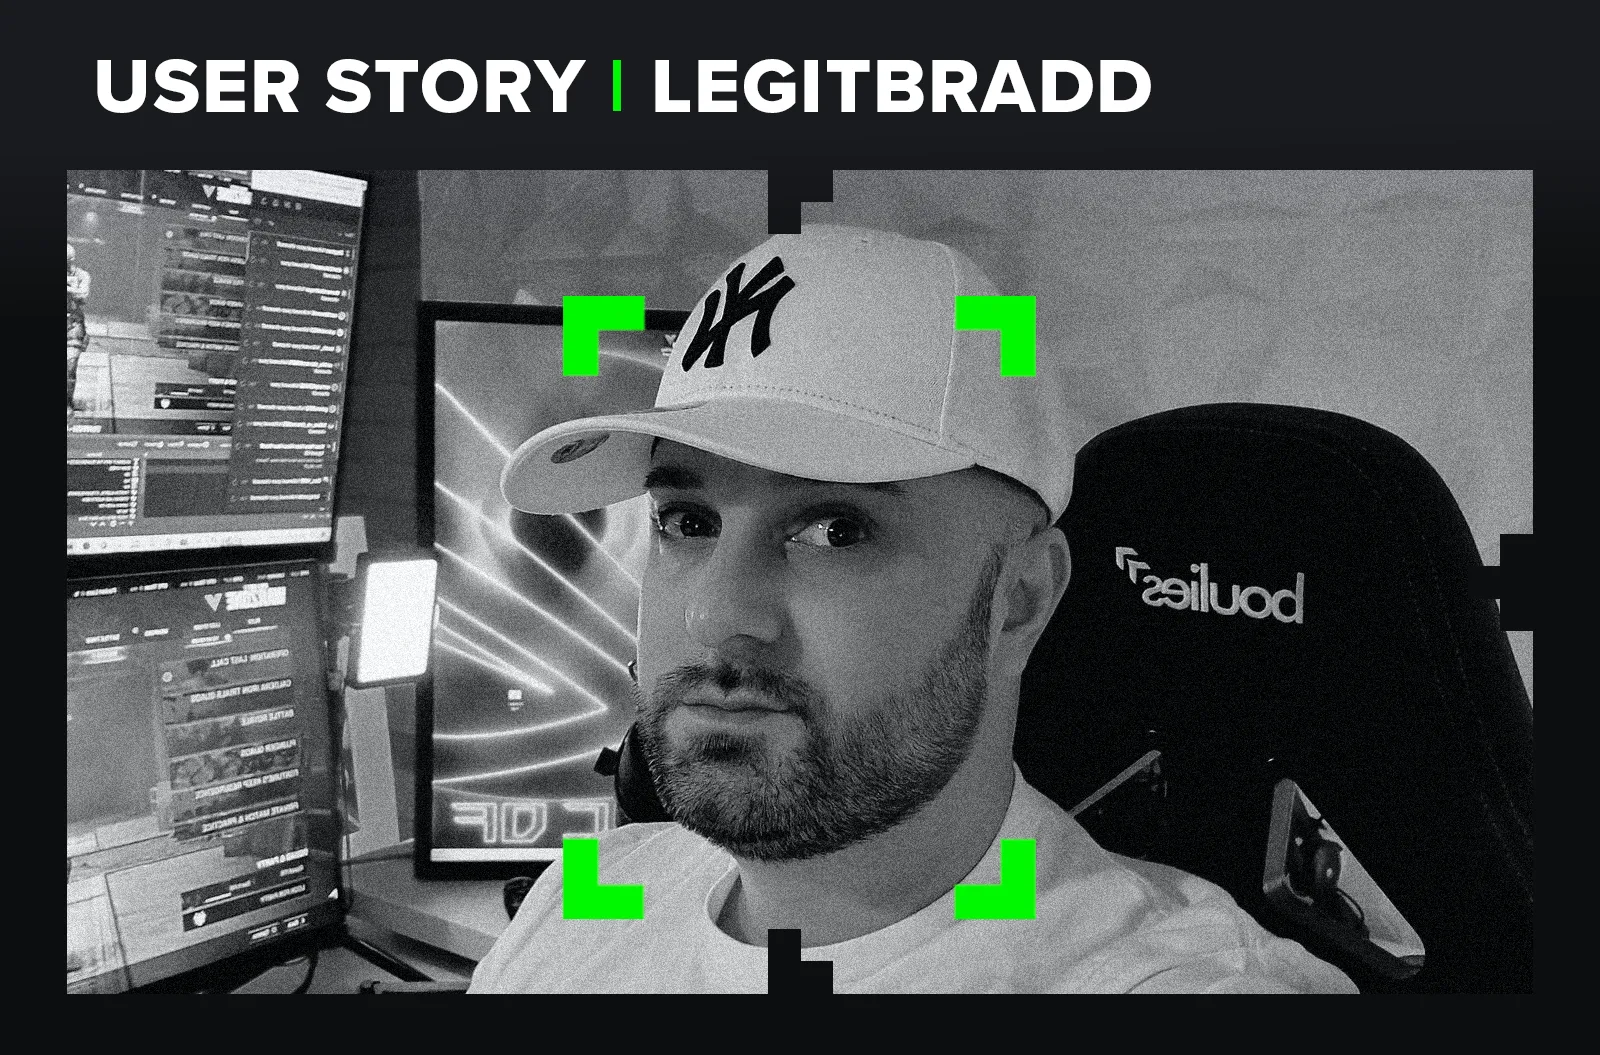 Legitbradd - User Story